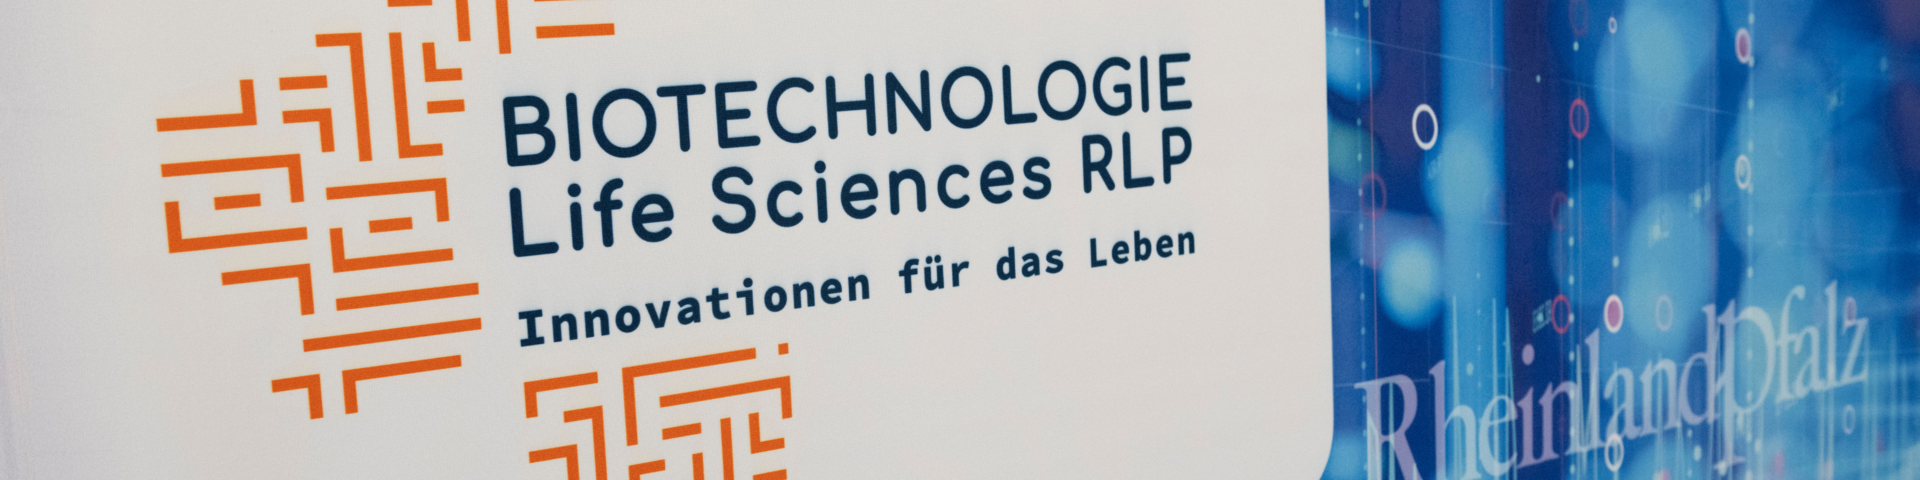 Biotechnologie RLP